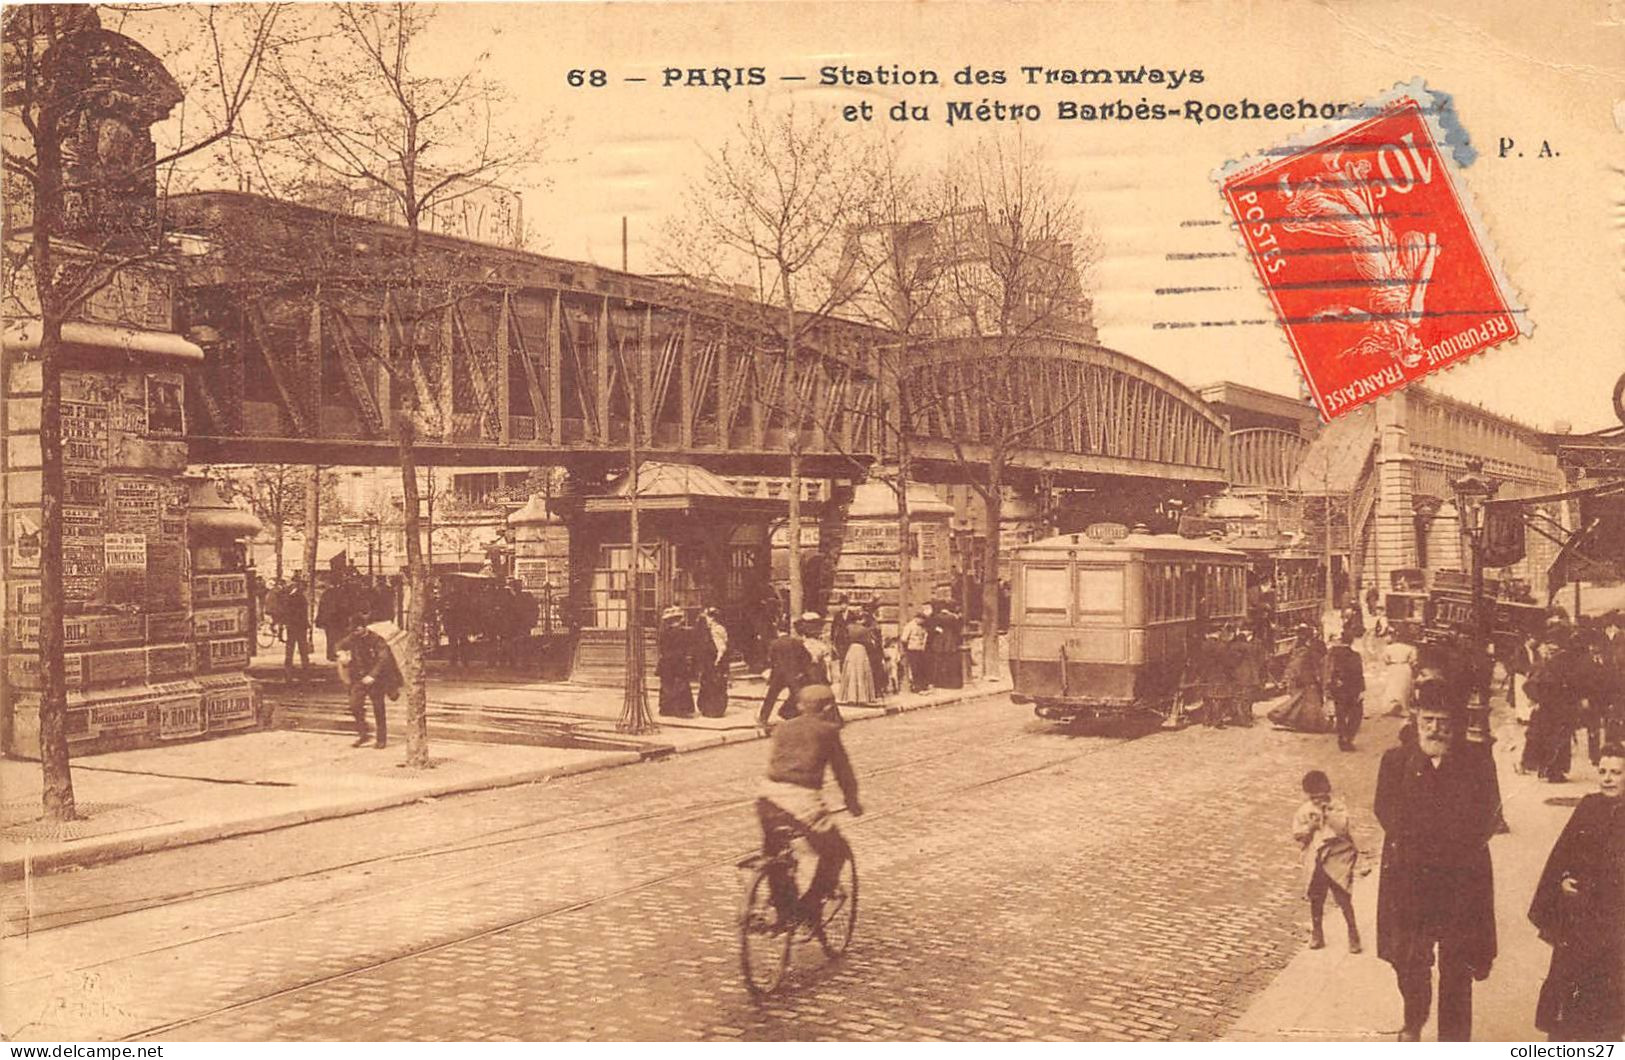 PARIS- STATION DES TRAMWAYS ET DU METRO BARBES-ROCHECHOUART - Pariser Métro, Bahnhöfe